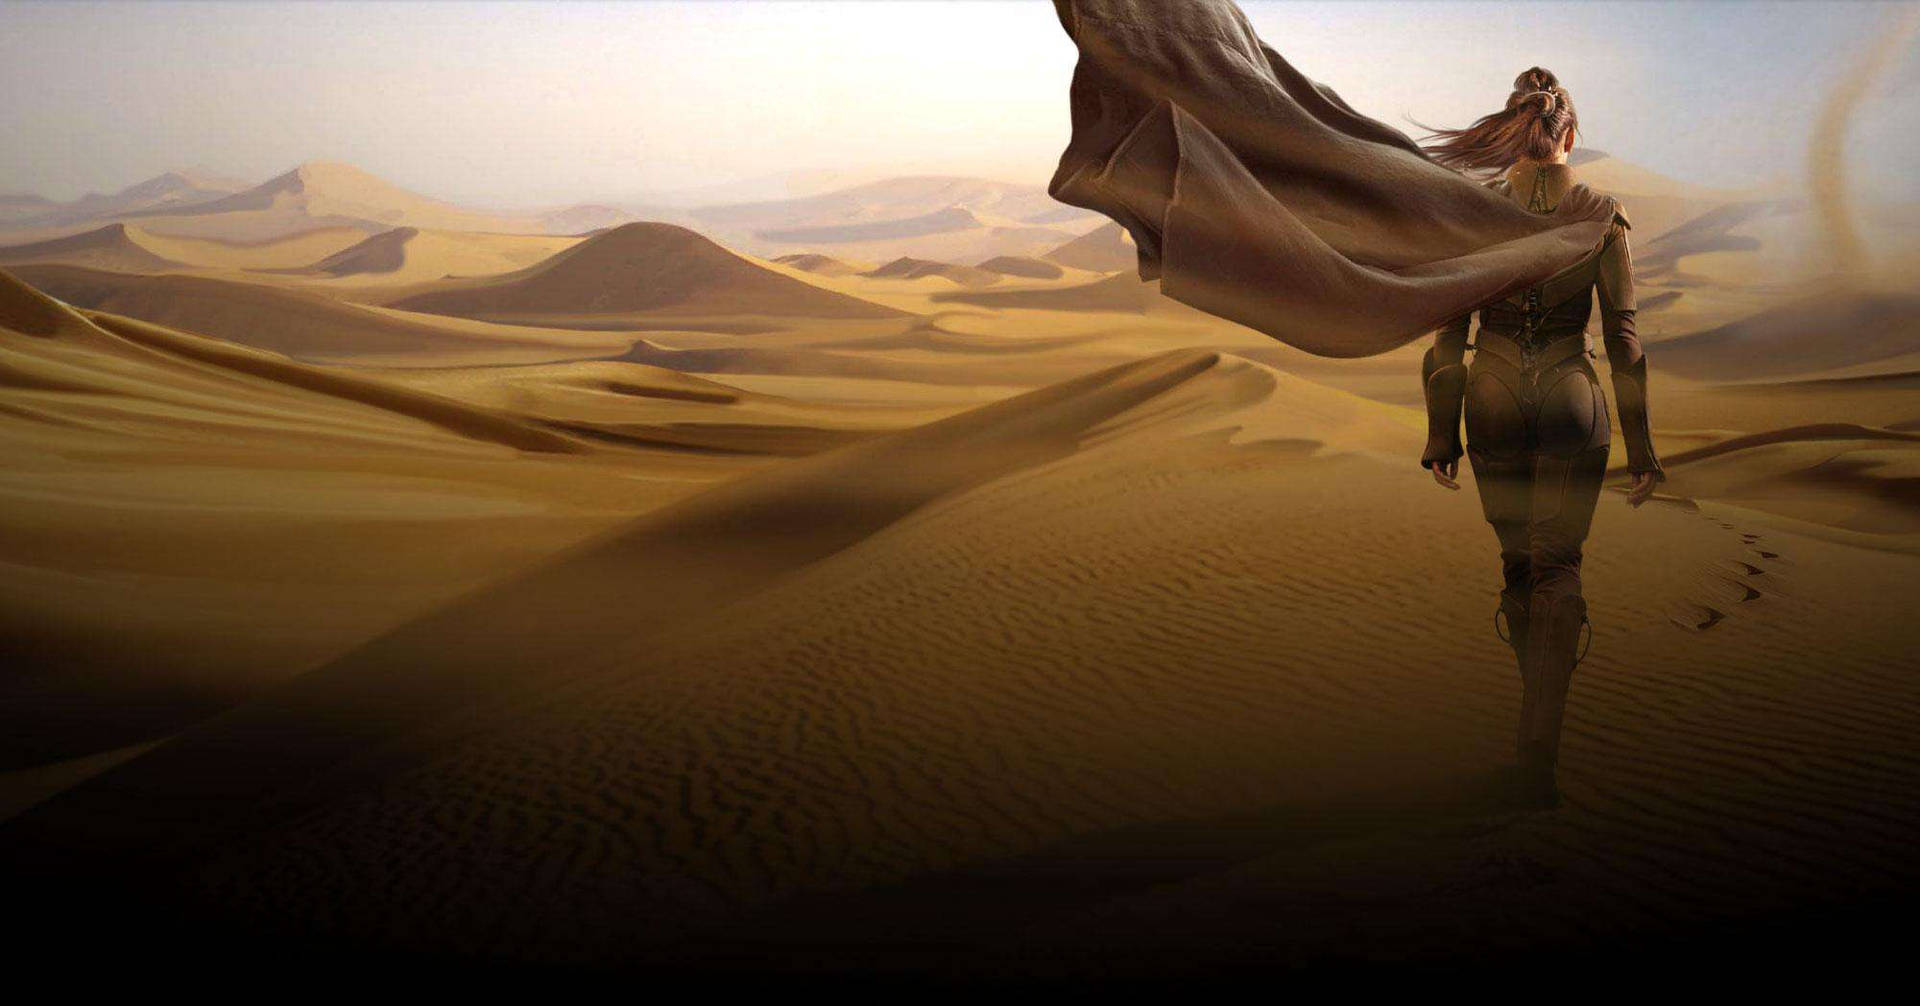 Wallpaper desert, 5k, 4k wallpaper, 8k, sand, algodones dunes, Nature #12176